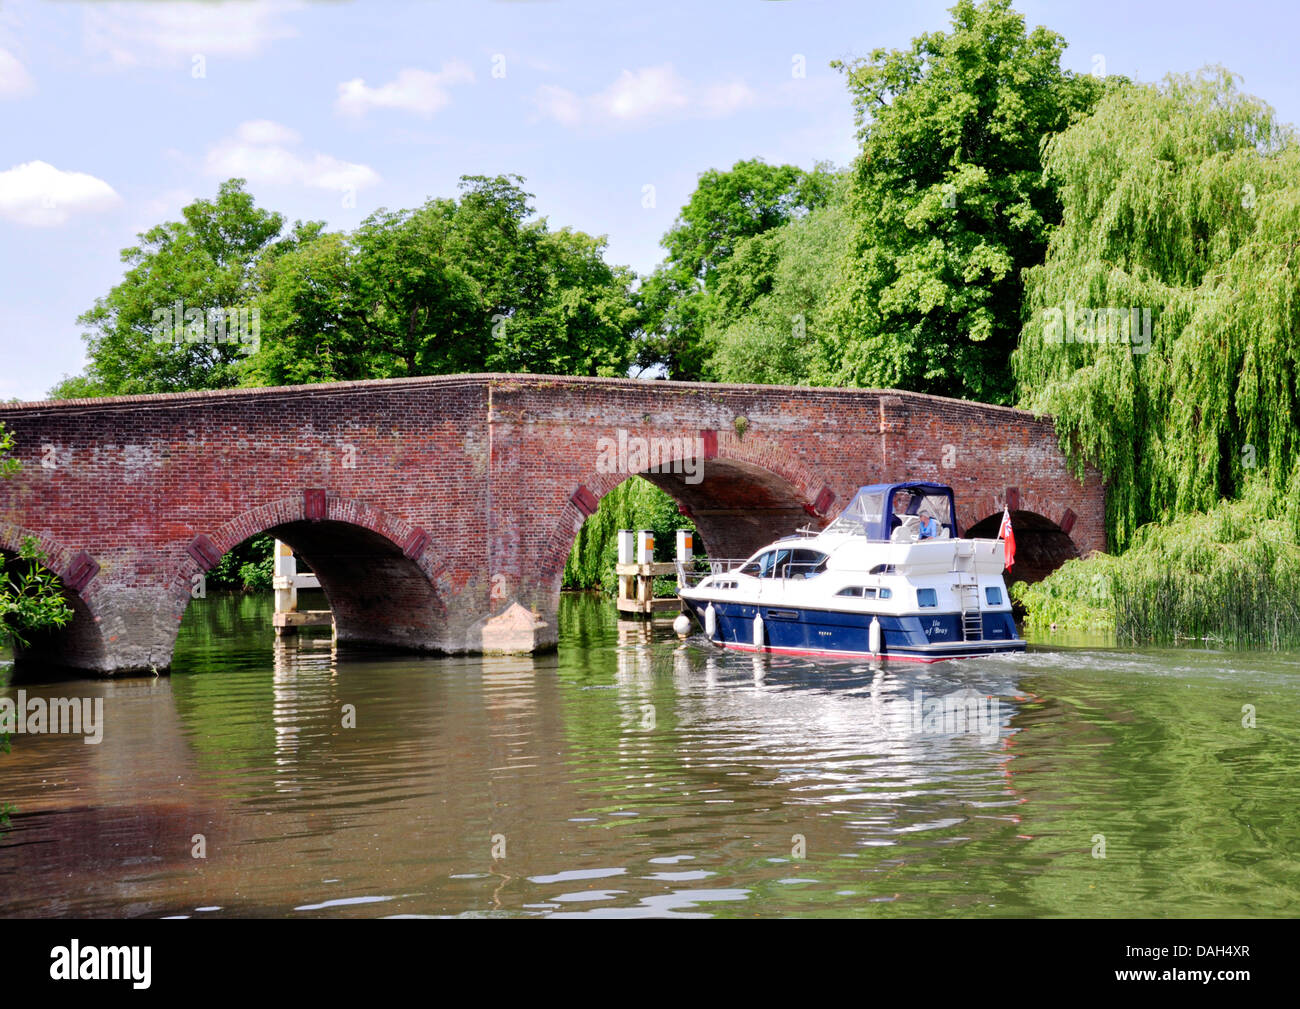 Berks - Sonning on Thames - plaisir cruiser à l'ancien pont - encadrée d'arbres - haut journée d'été - blue sky - les nuages - réflexions Banque D'Images